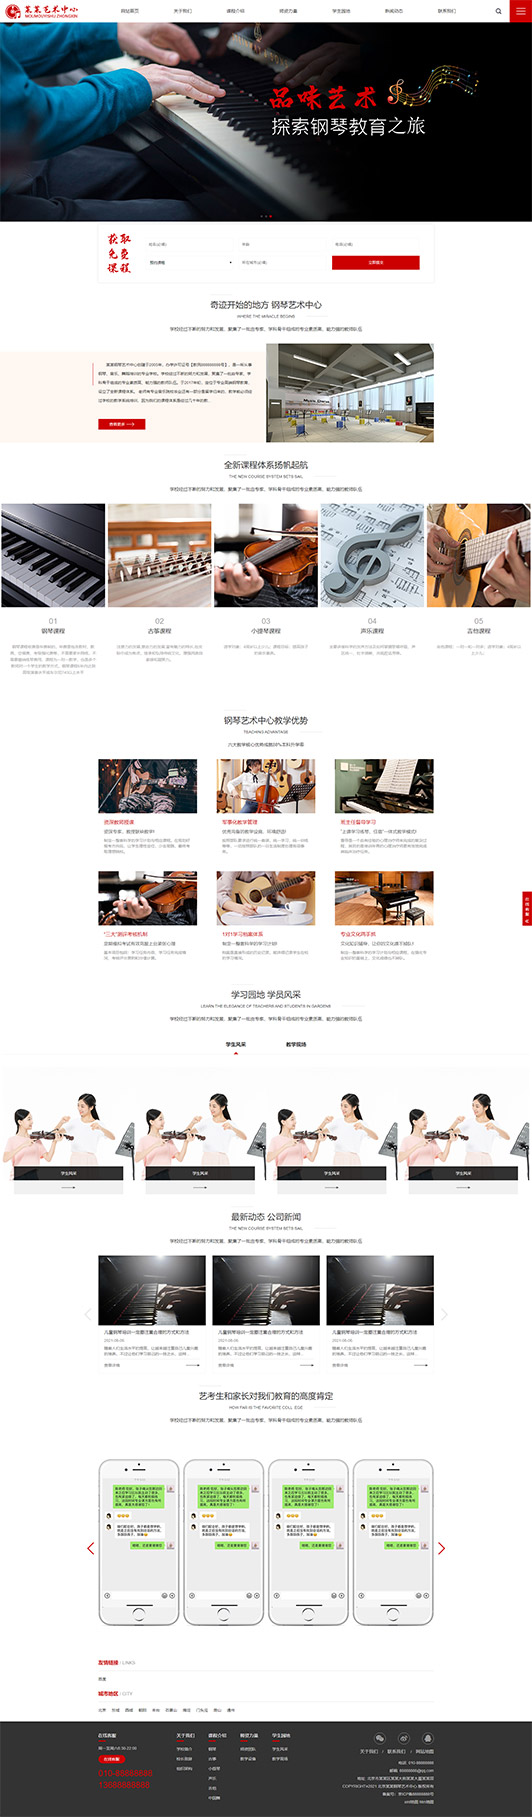 伊春钢琴艺术培训公司响应式企业网站